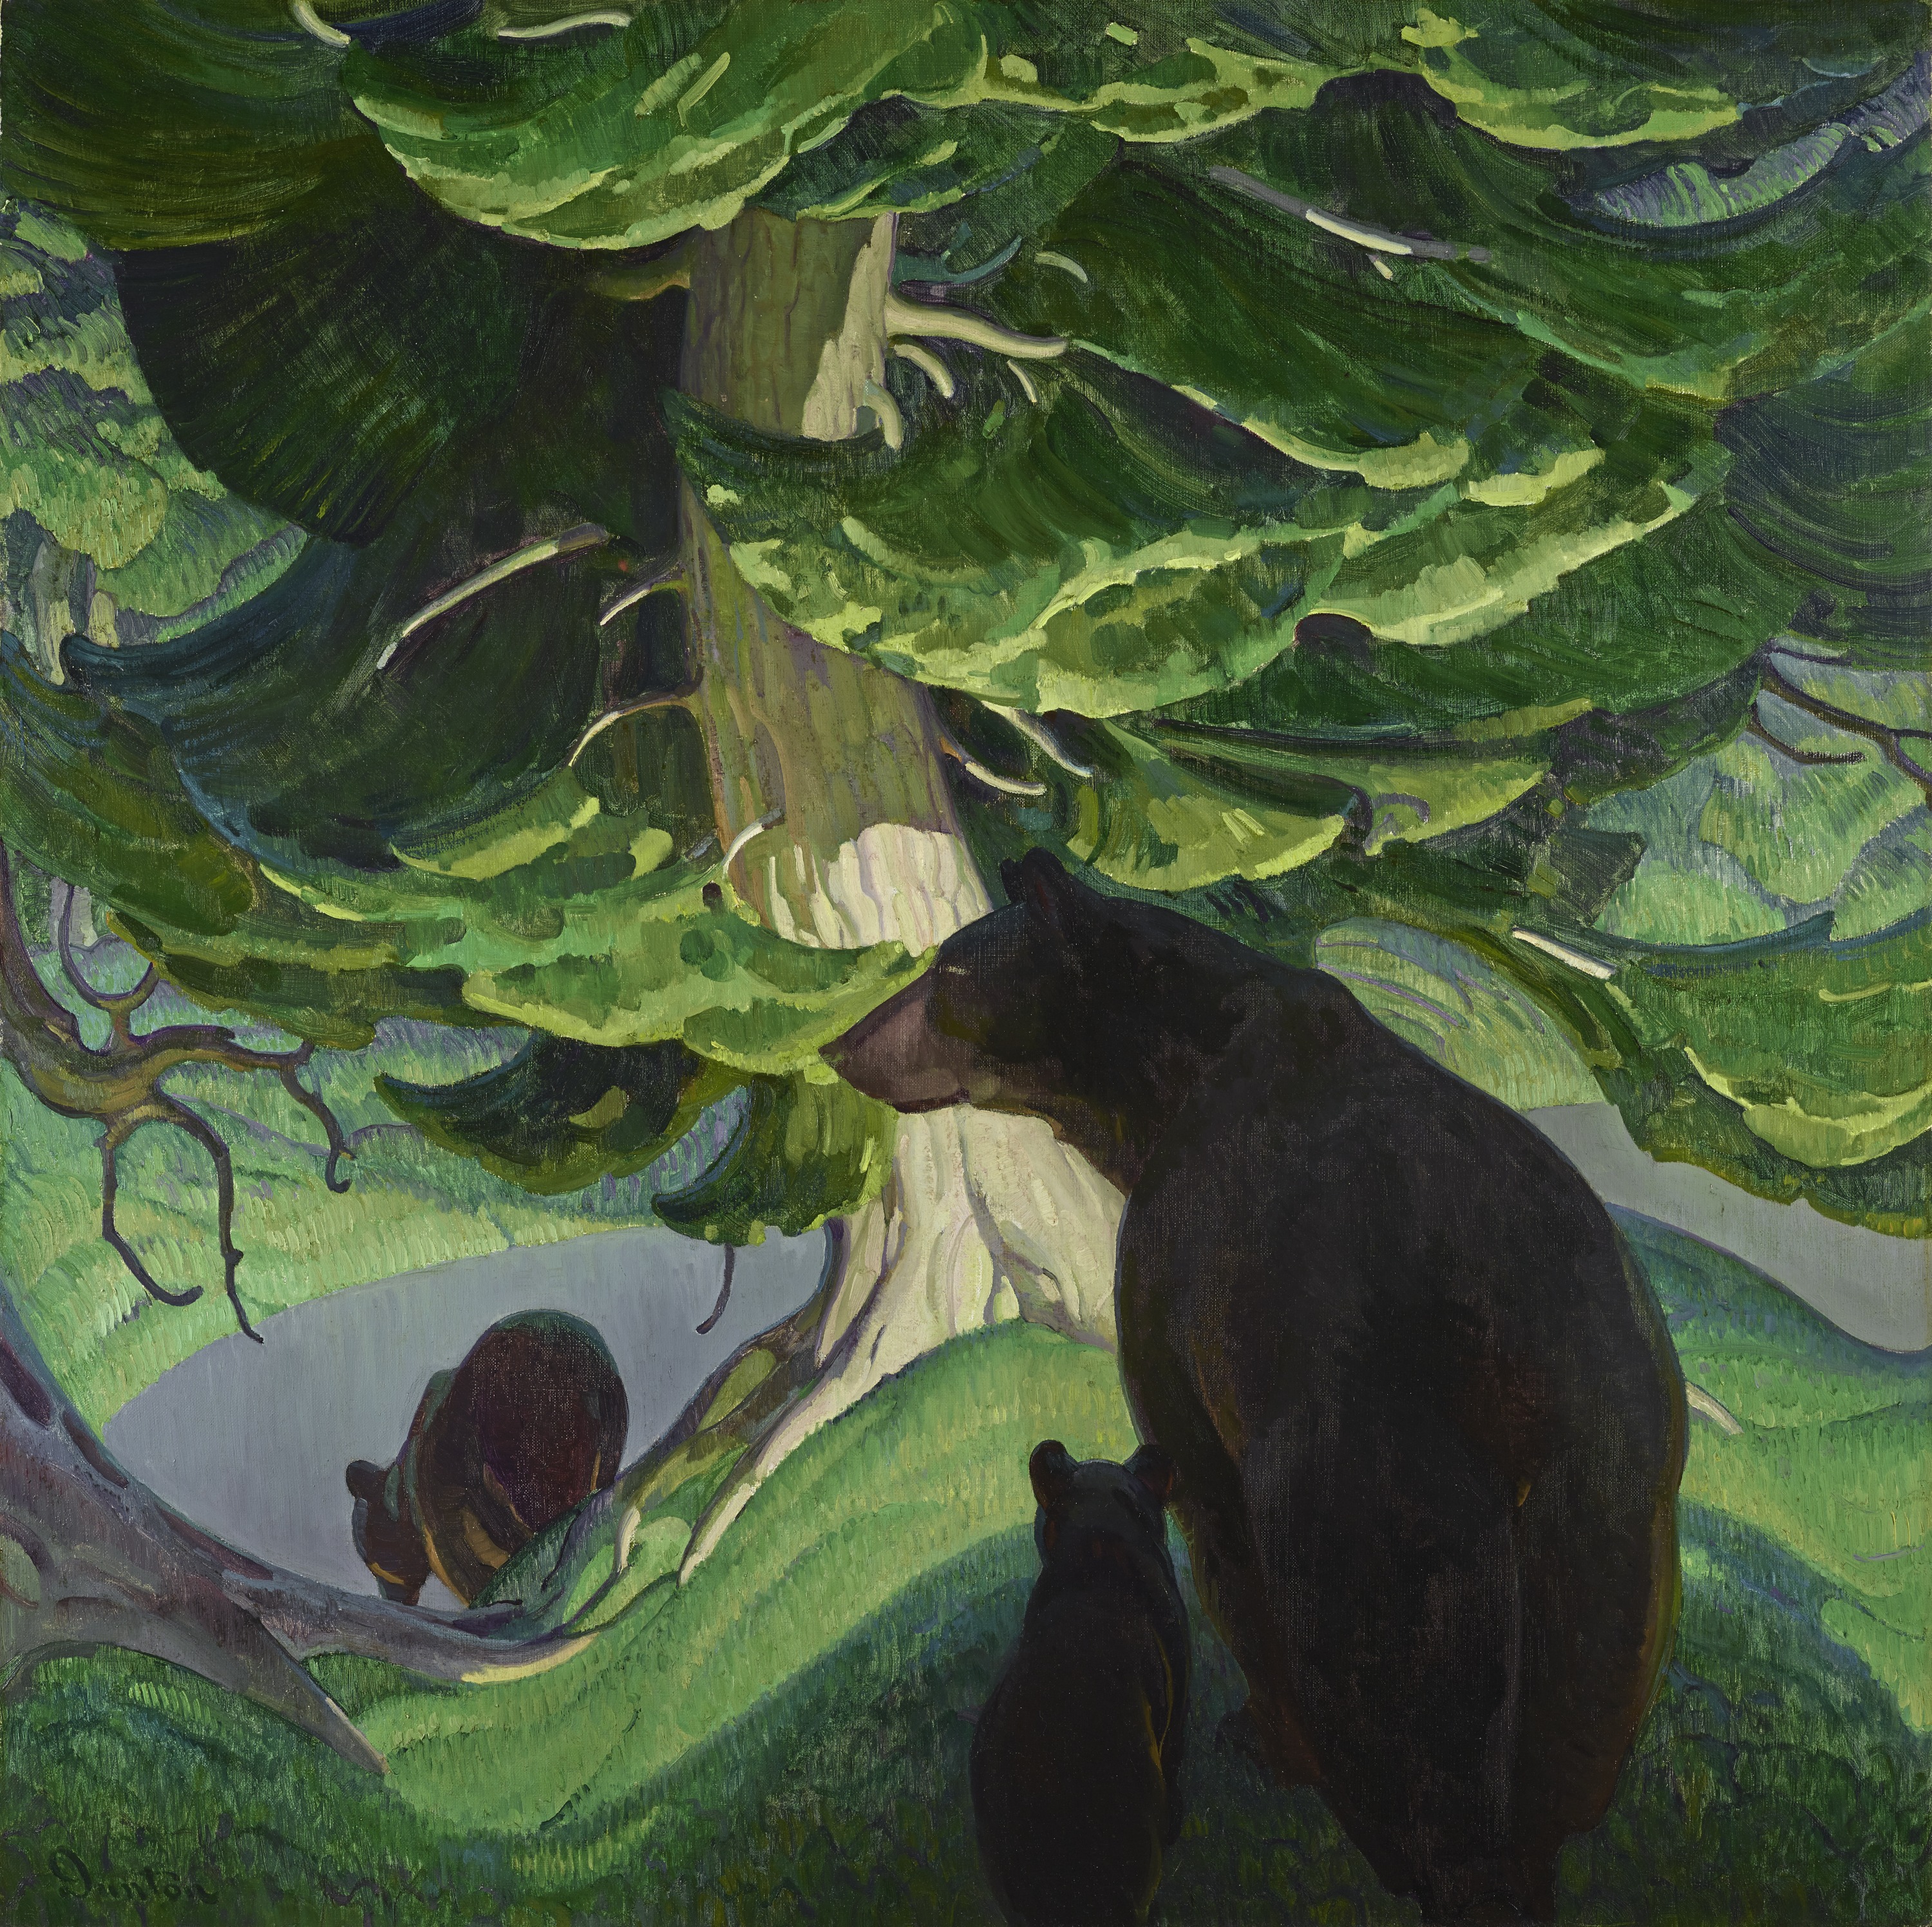 흑곰(Black Bears) by William Herbert "Buck" Dunton - 1927년경 - 127 x 127 cm 